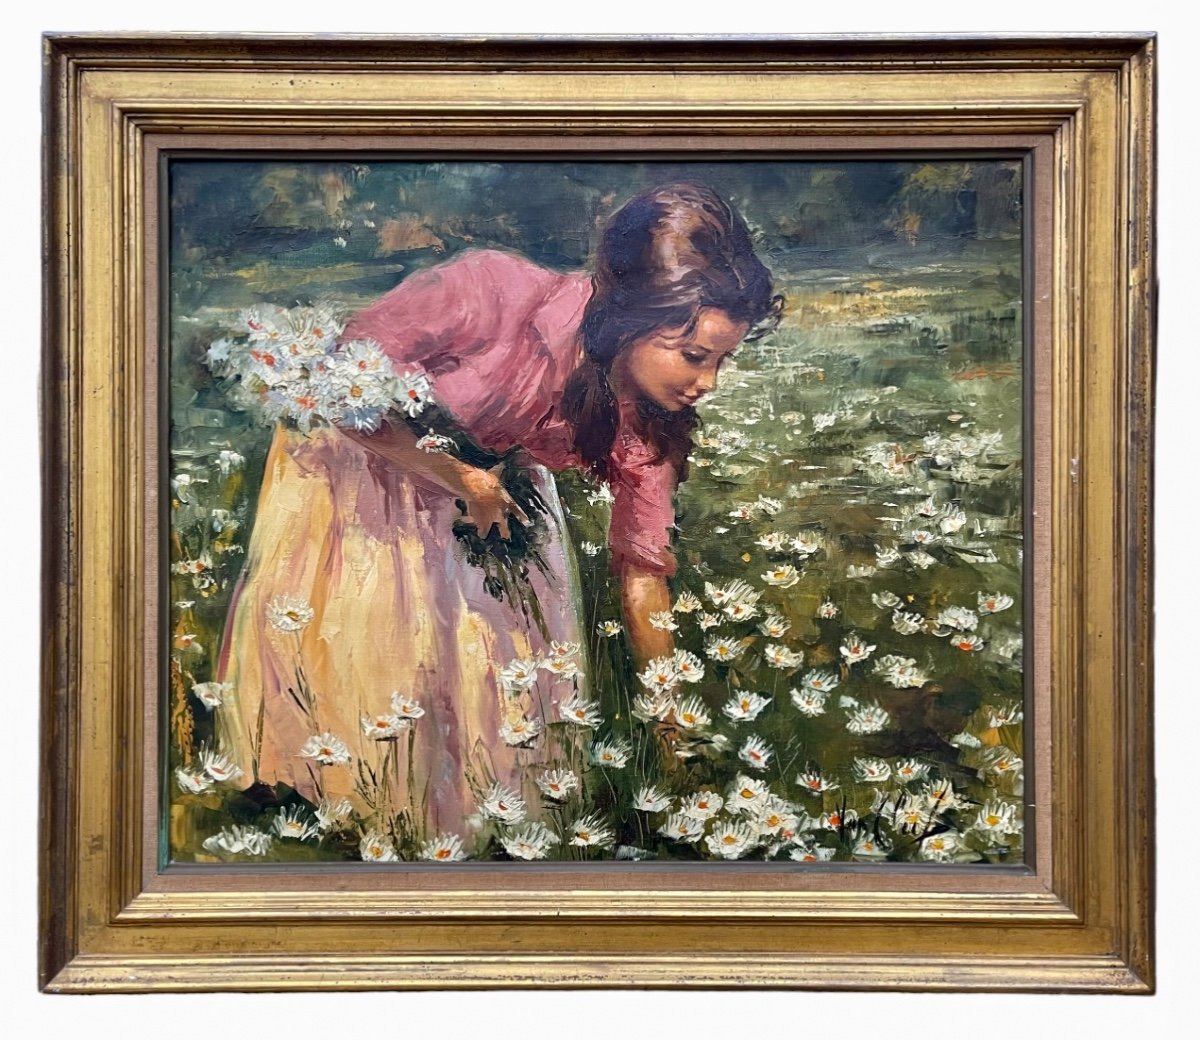 Robert Van Cleef - Young Girl Collecting Daisies